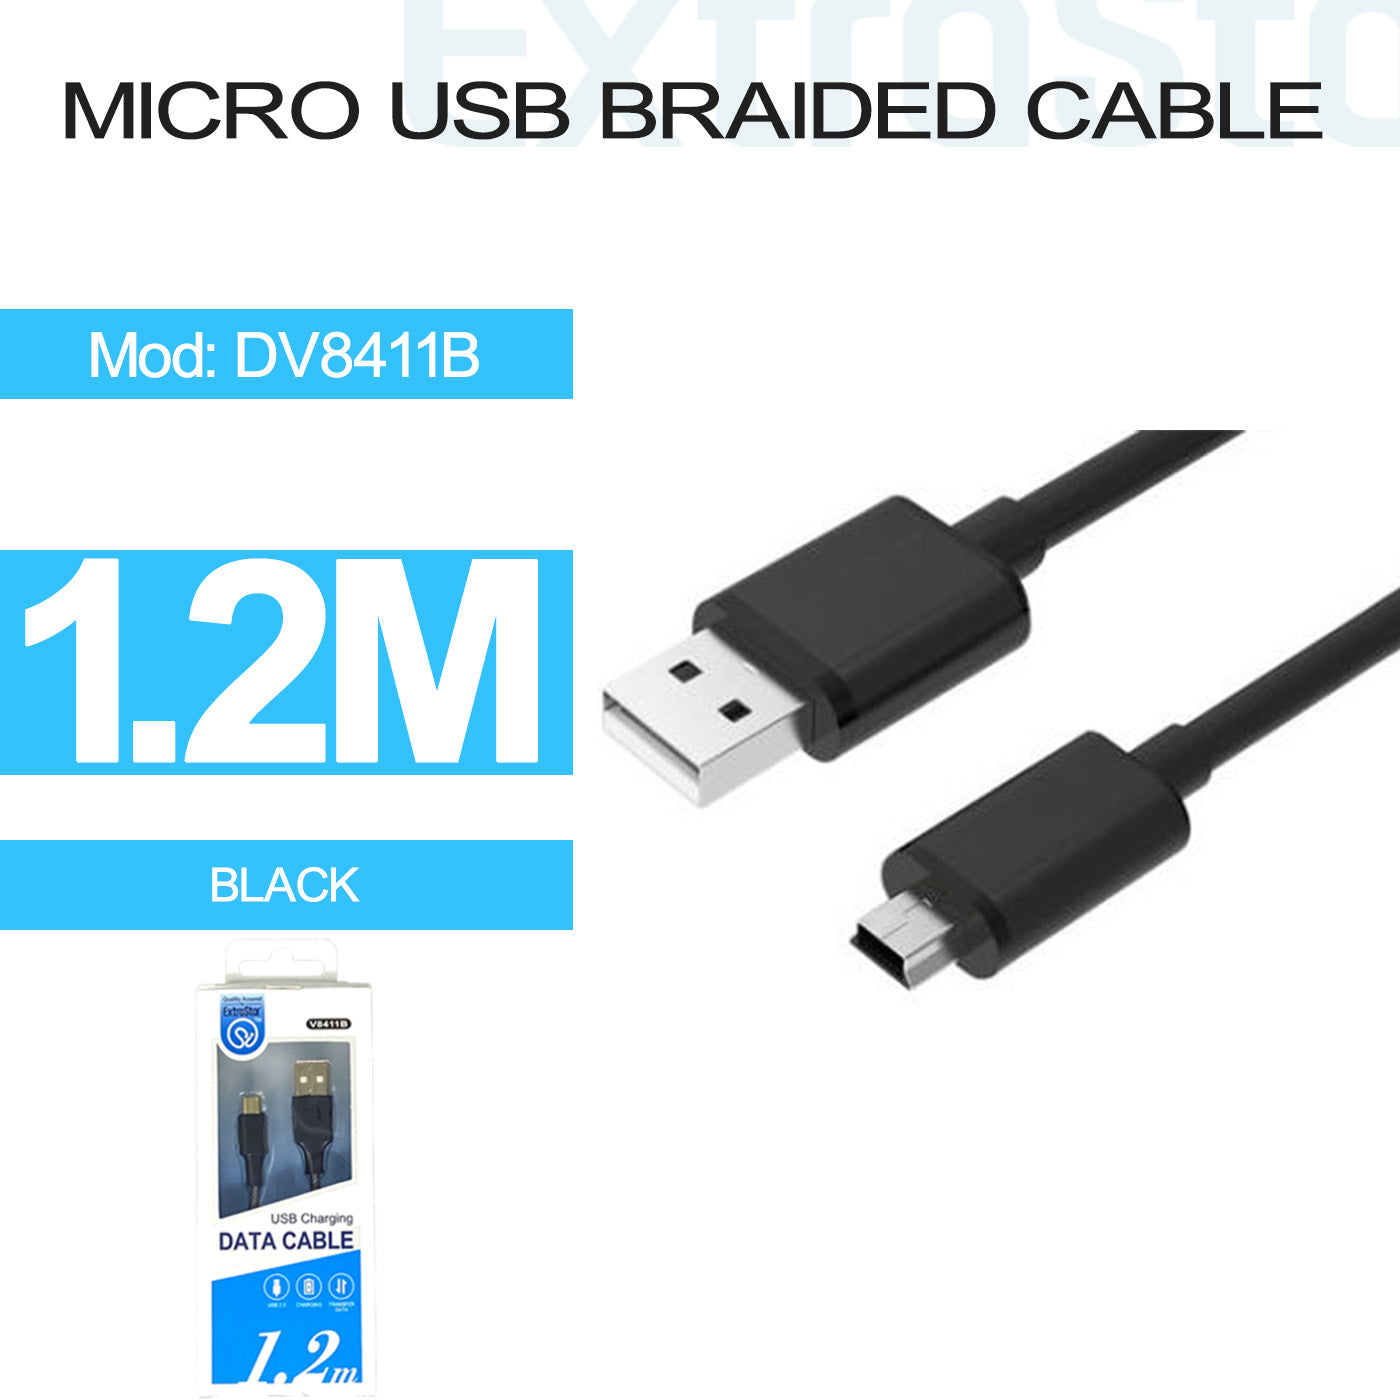 Micro USB Cable, 1.2m, Black (DV8411B)